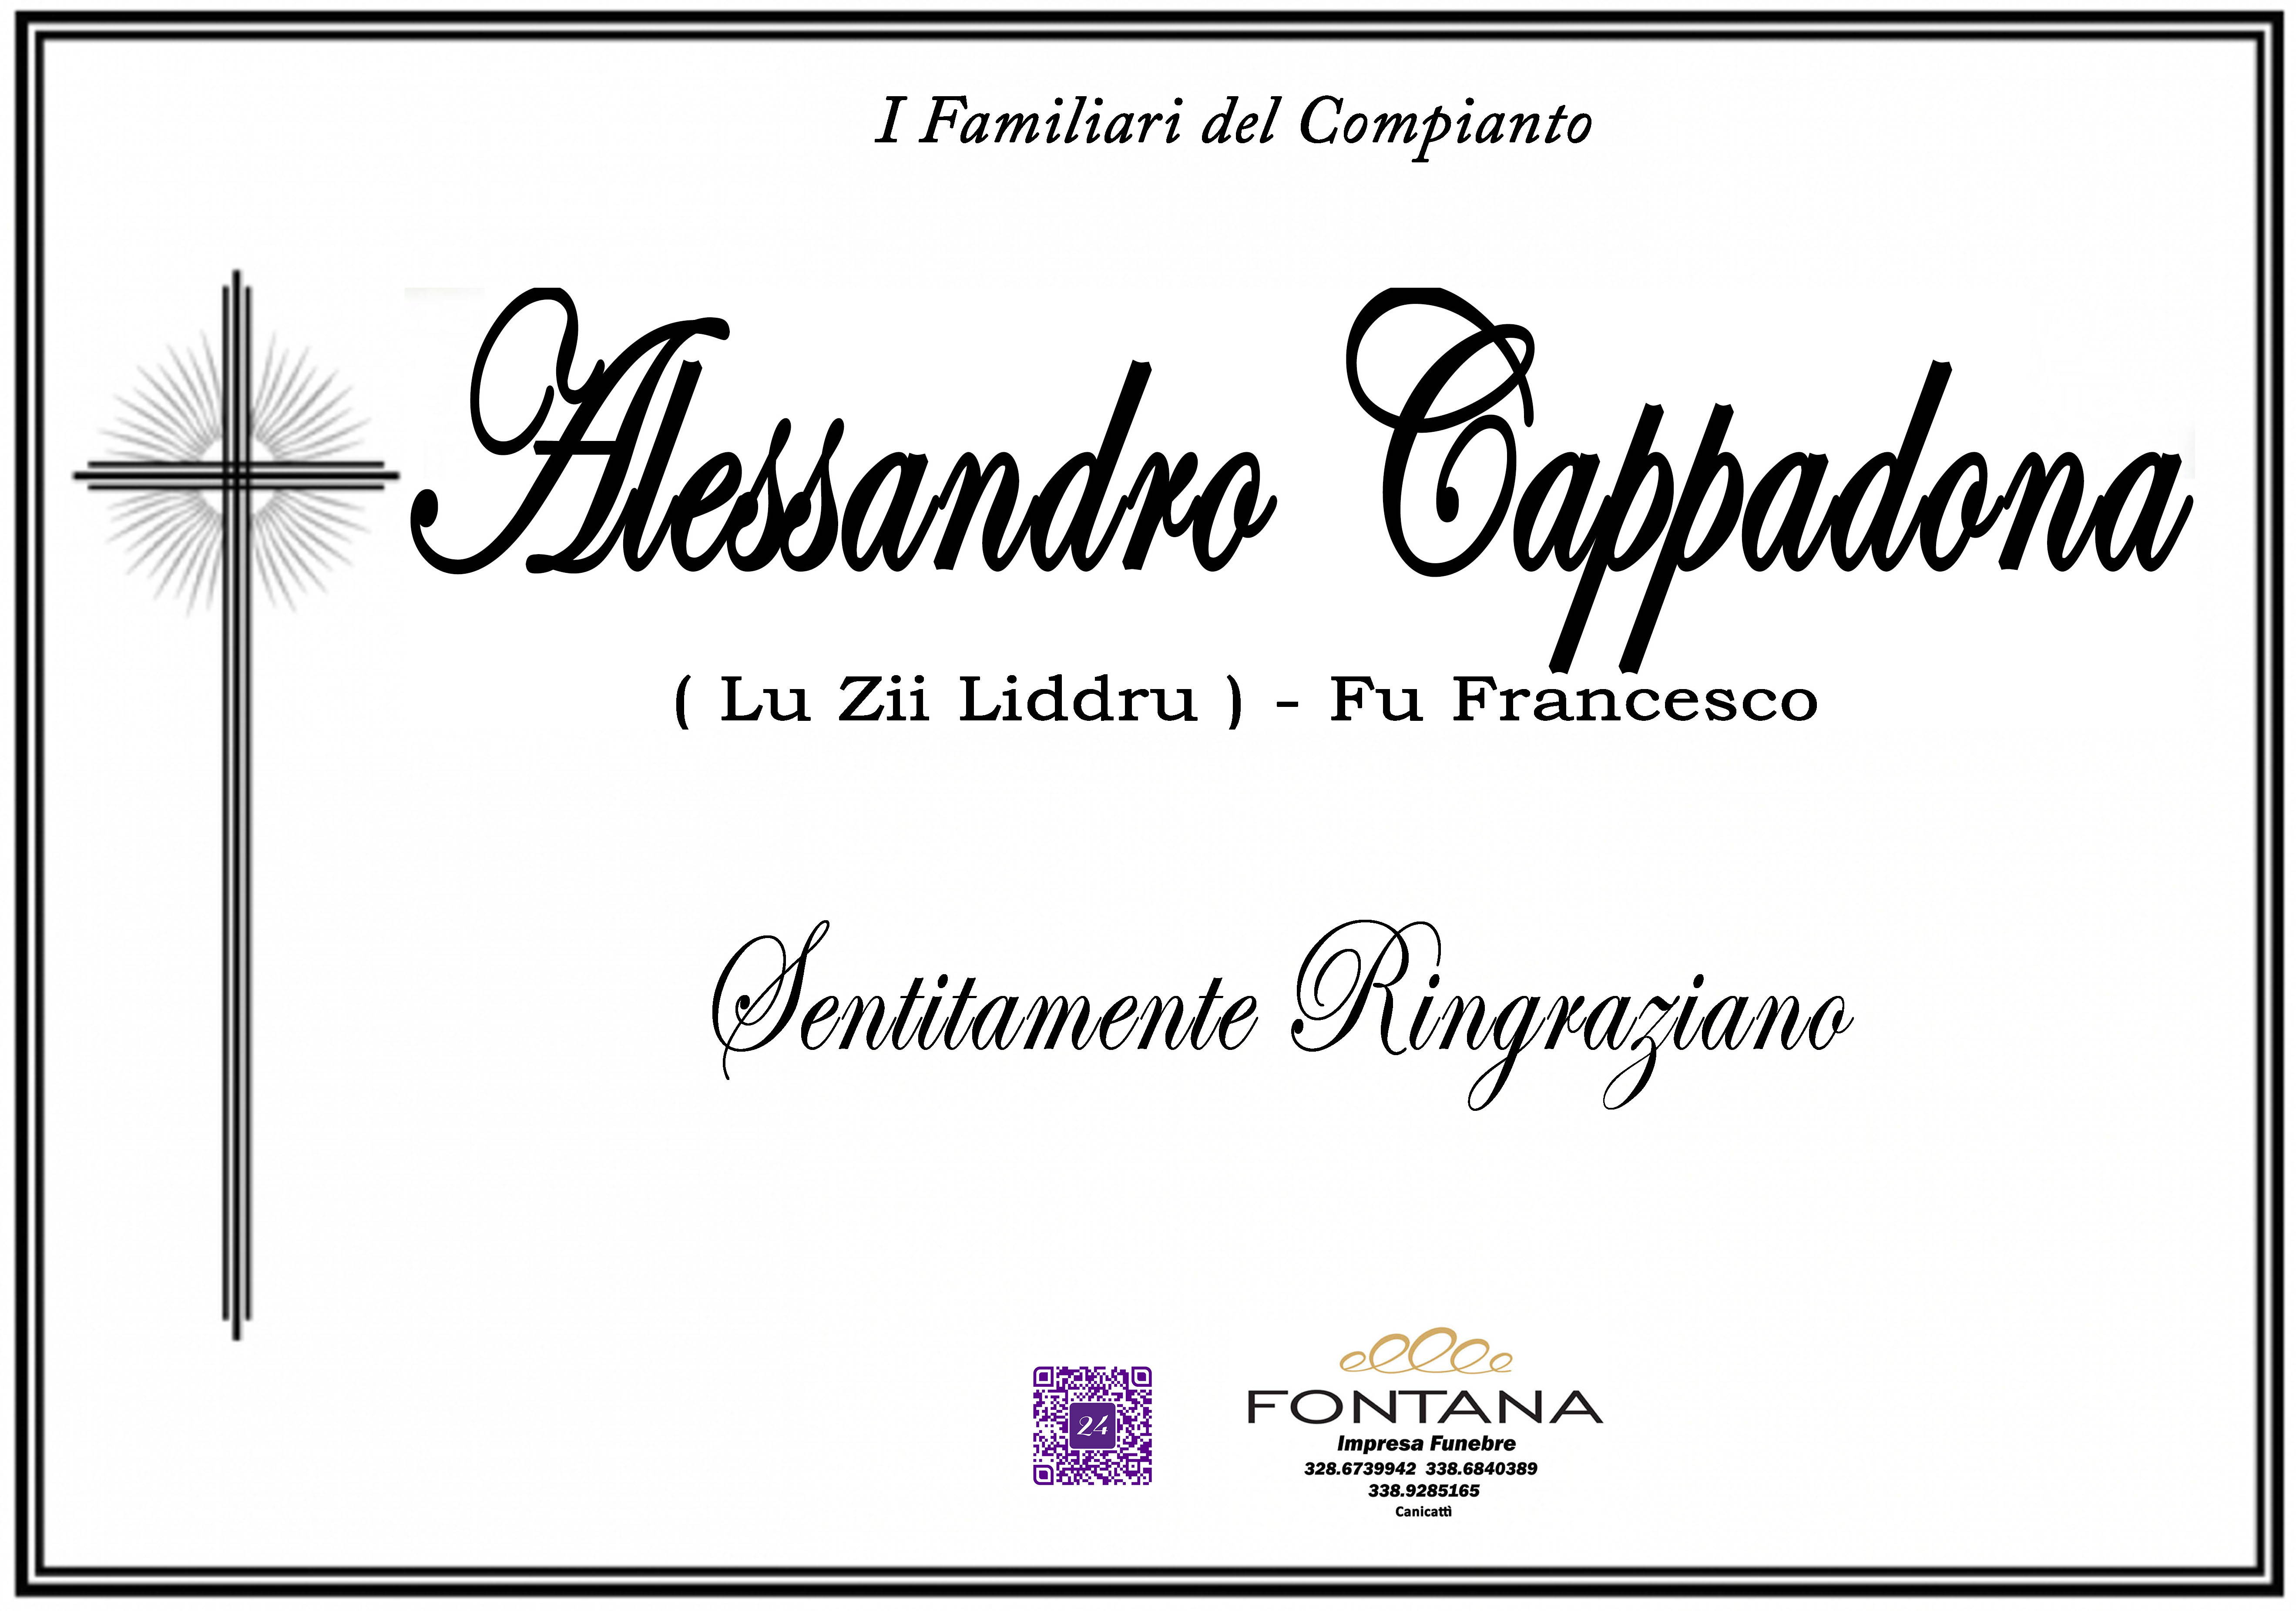 Alessandro Cappadona